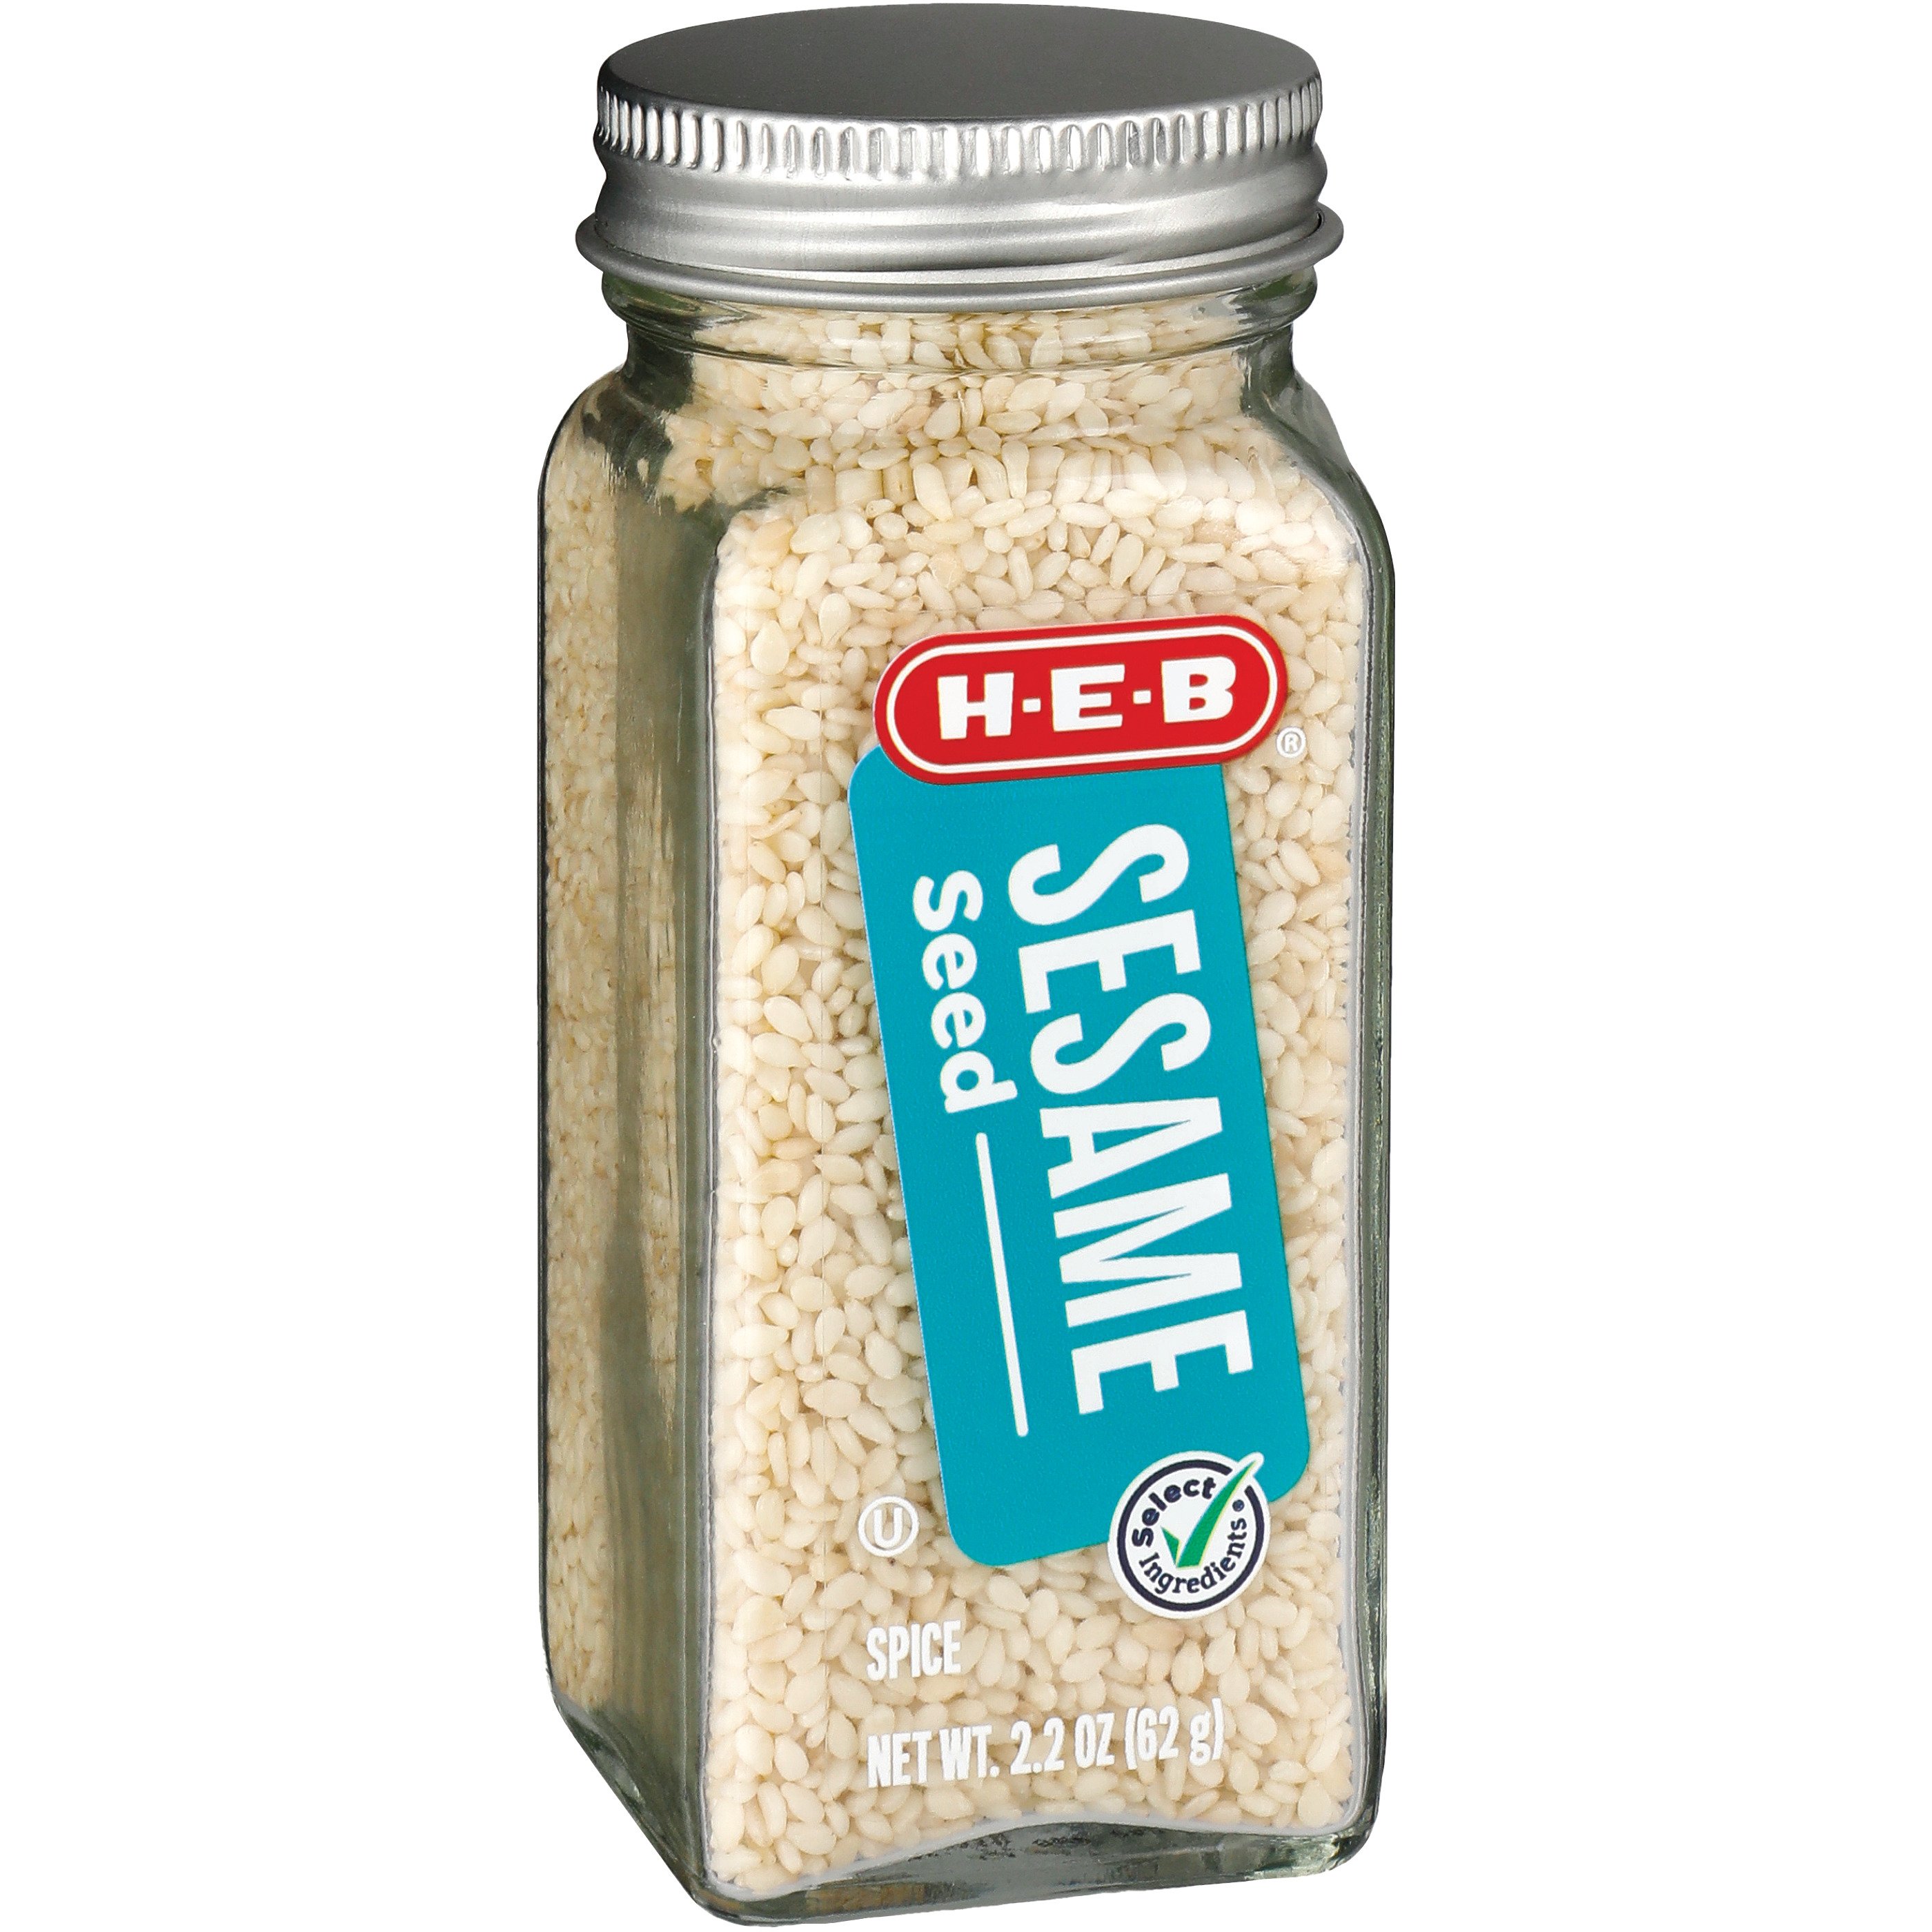 H-E-B Sesame Seed Seasoning - Shop Herbs & Spices at H-E-B